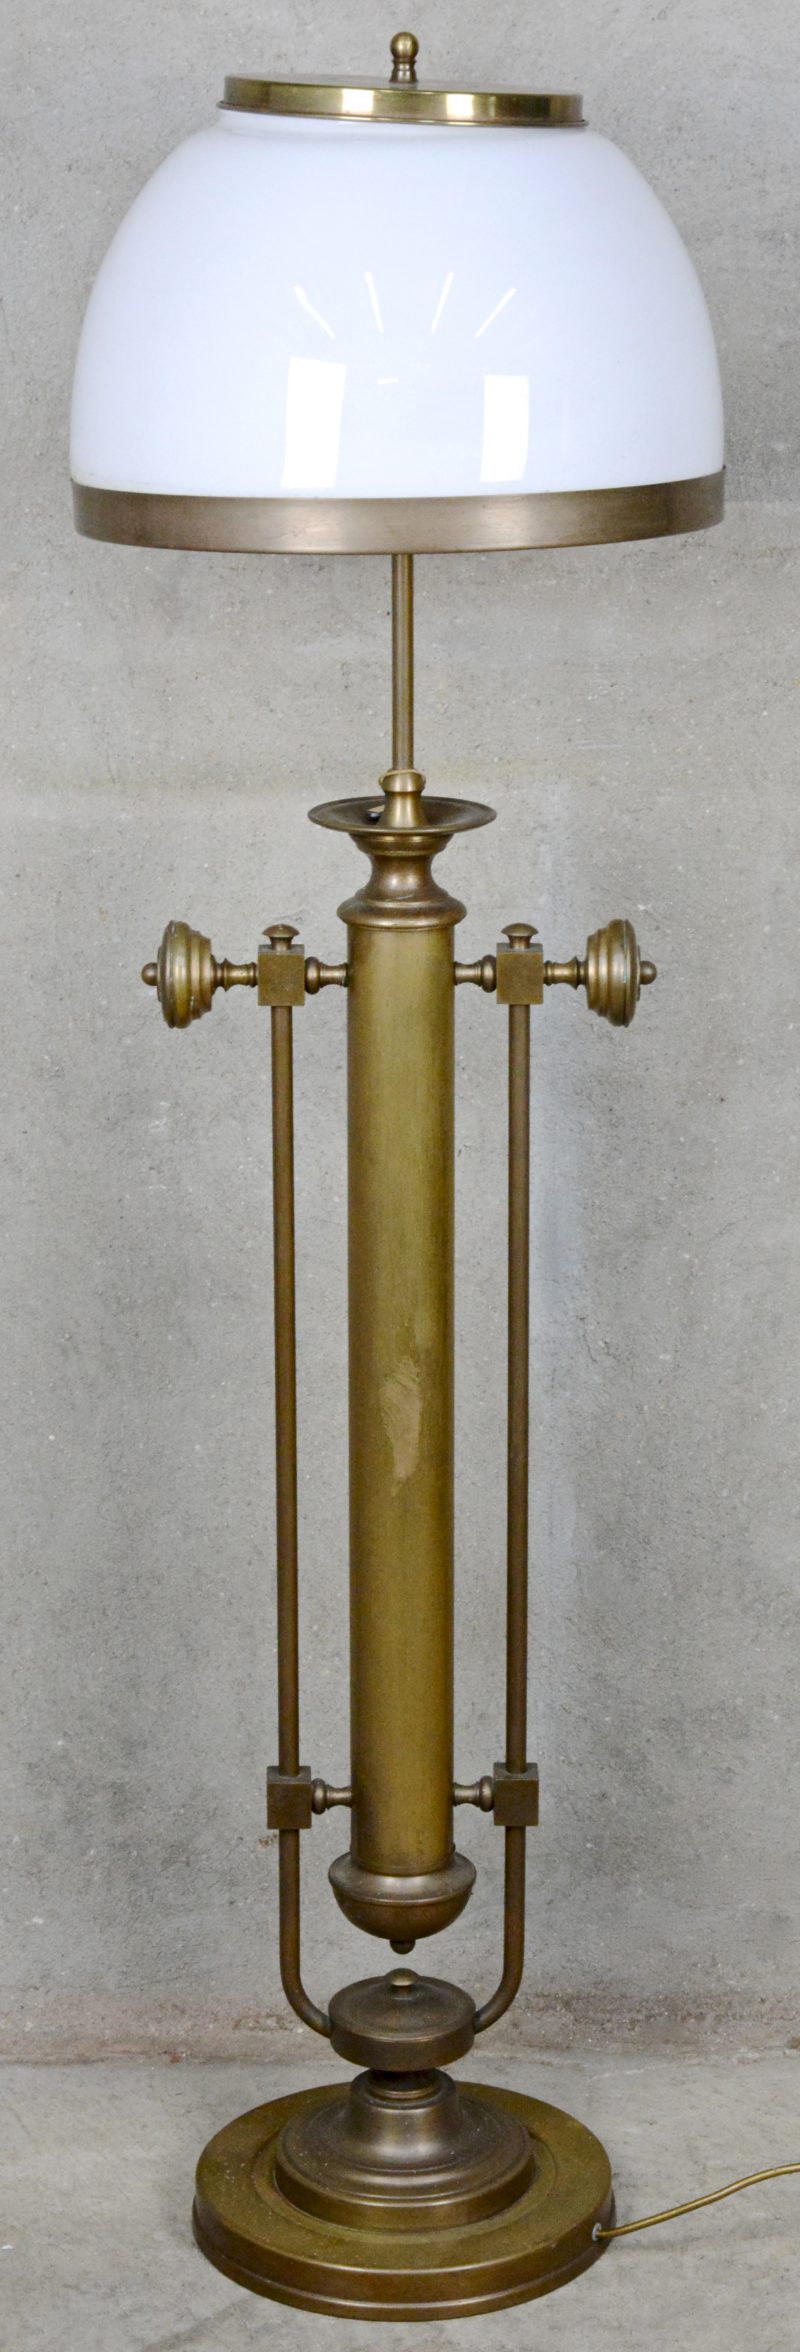 Een messingen staande lamp met grote bolle kap van melkglas. Medio XXste eeuw.